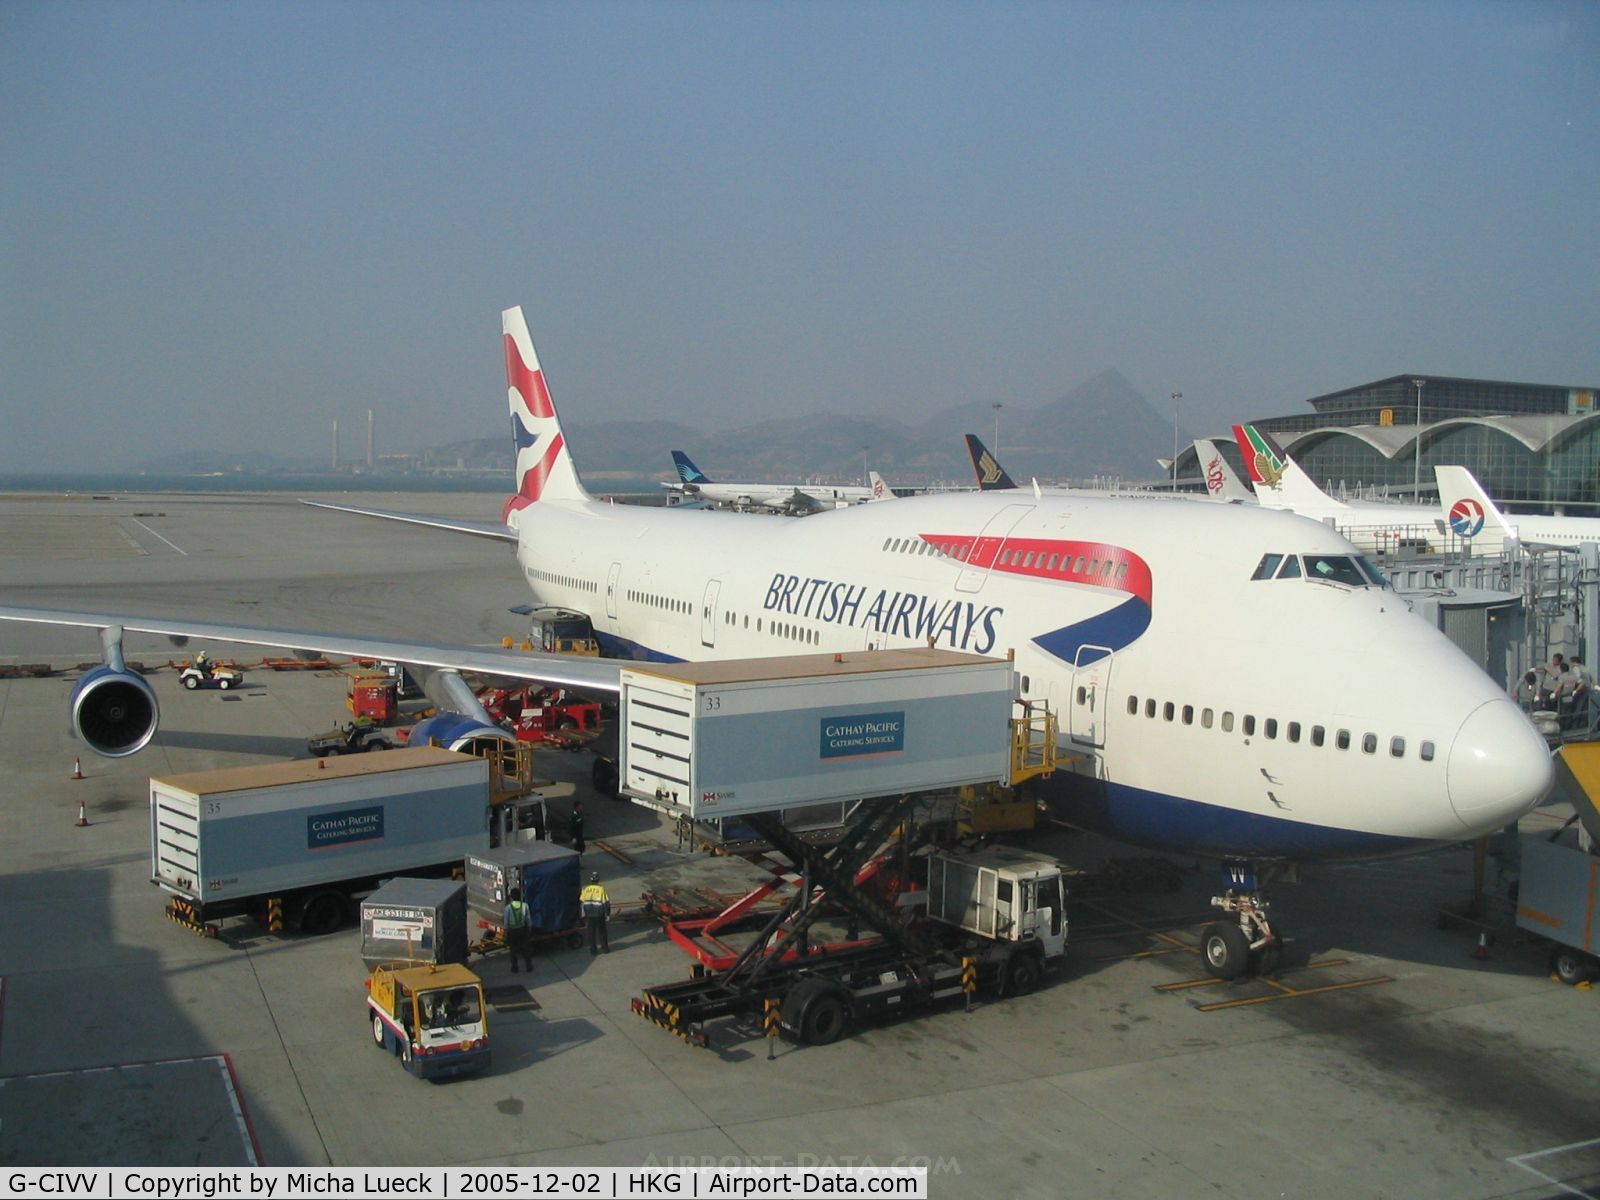 G-CIVV, 1998 Boeing 747-436 C/N 25819, BA's B747-400 at OneWorld partner Cathay Pacific's home base Hong Kong